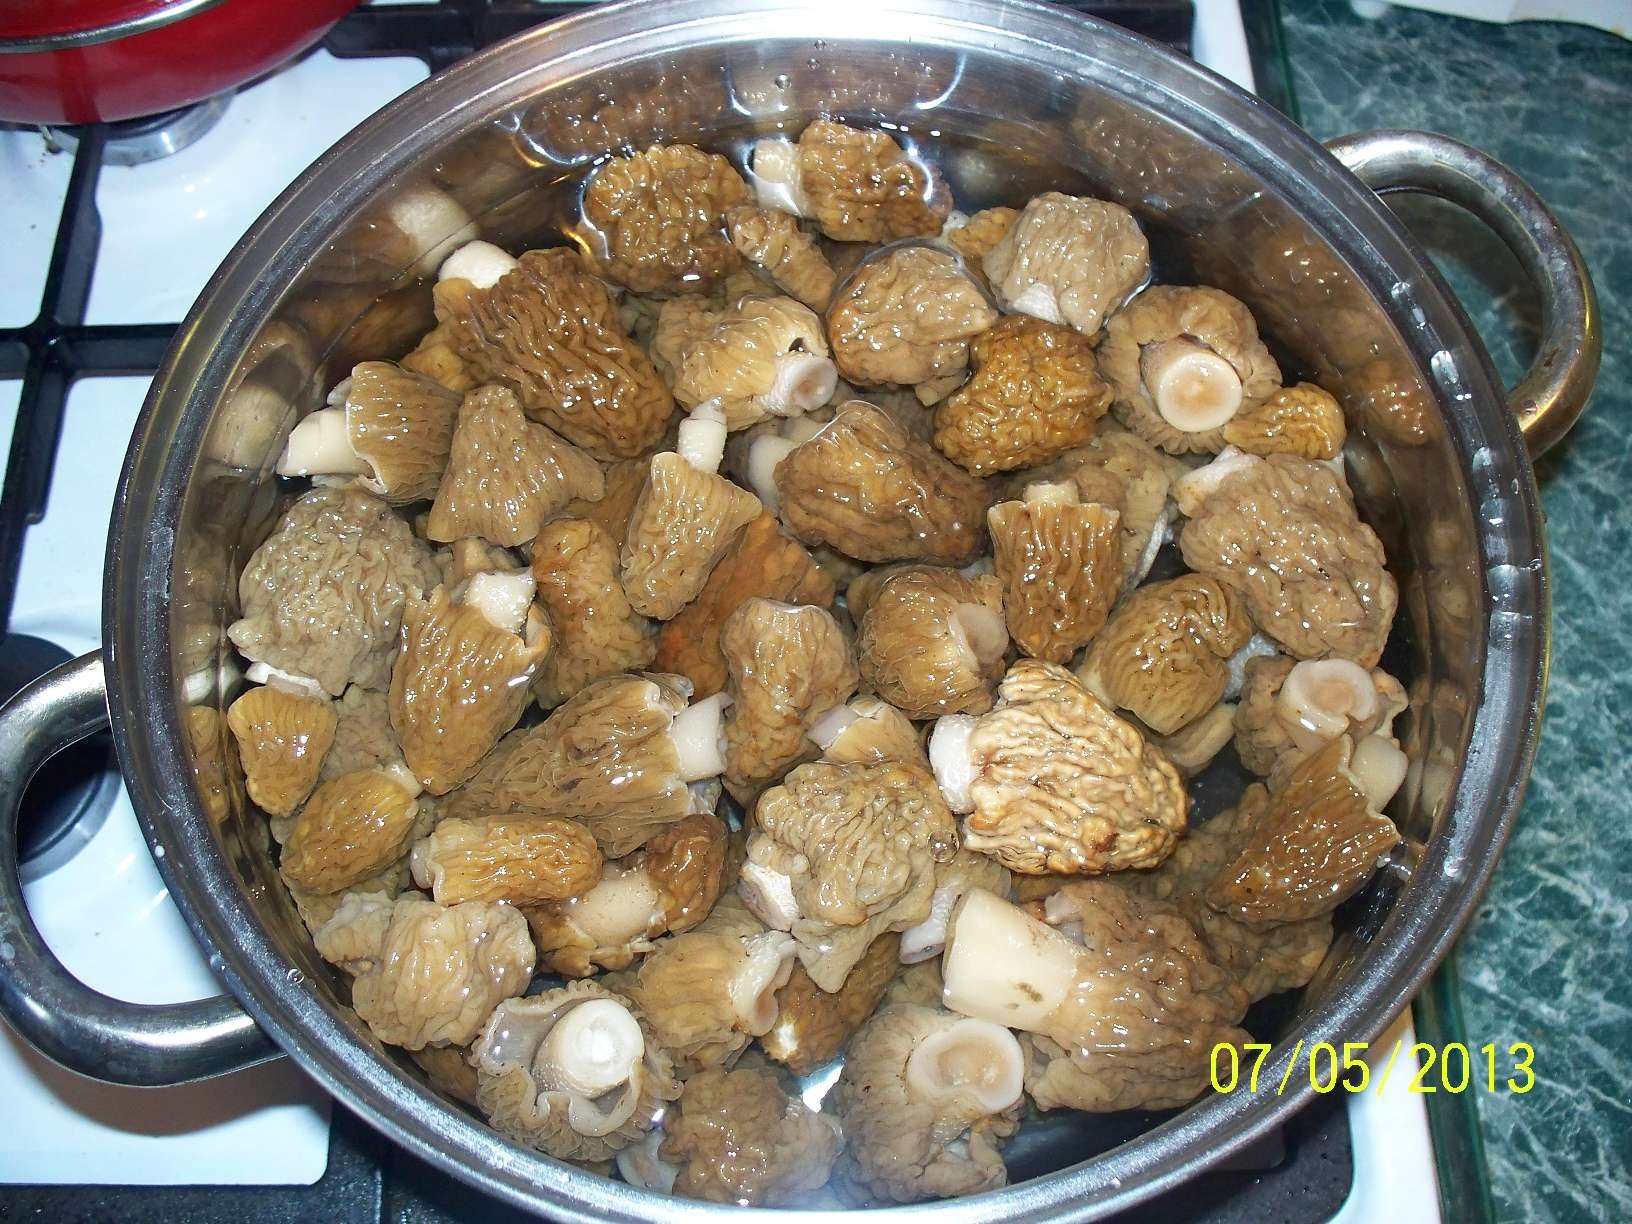 Сморчки грибы рецепт приготовления в домашних